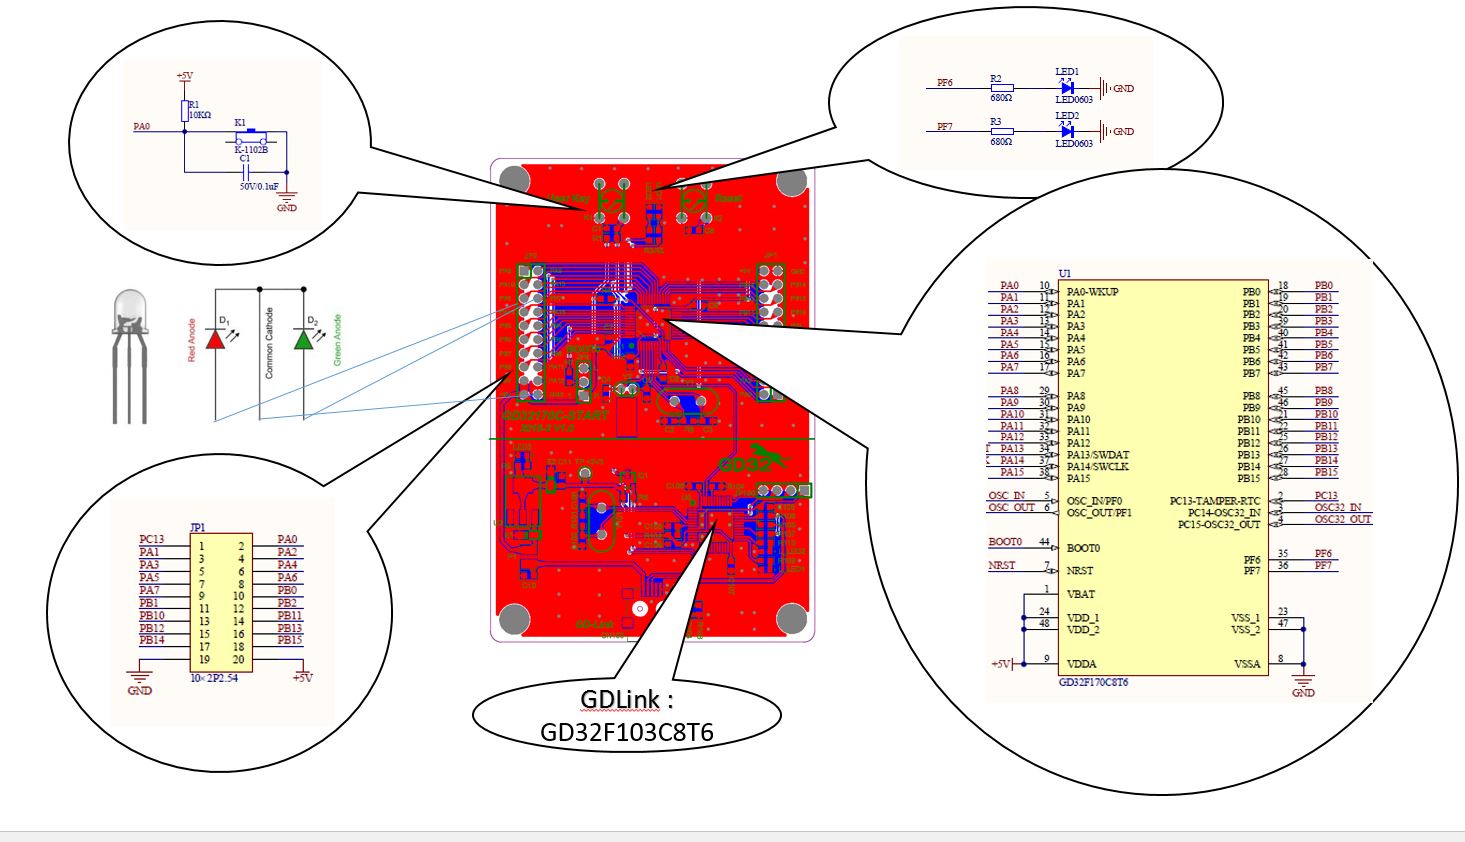 5 | A GD32170C-START kezdőkészlet egyes hardver szekcióinak magyarázata 

